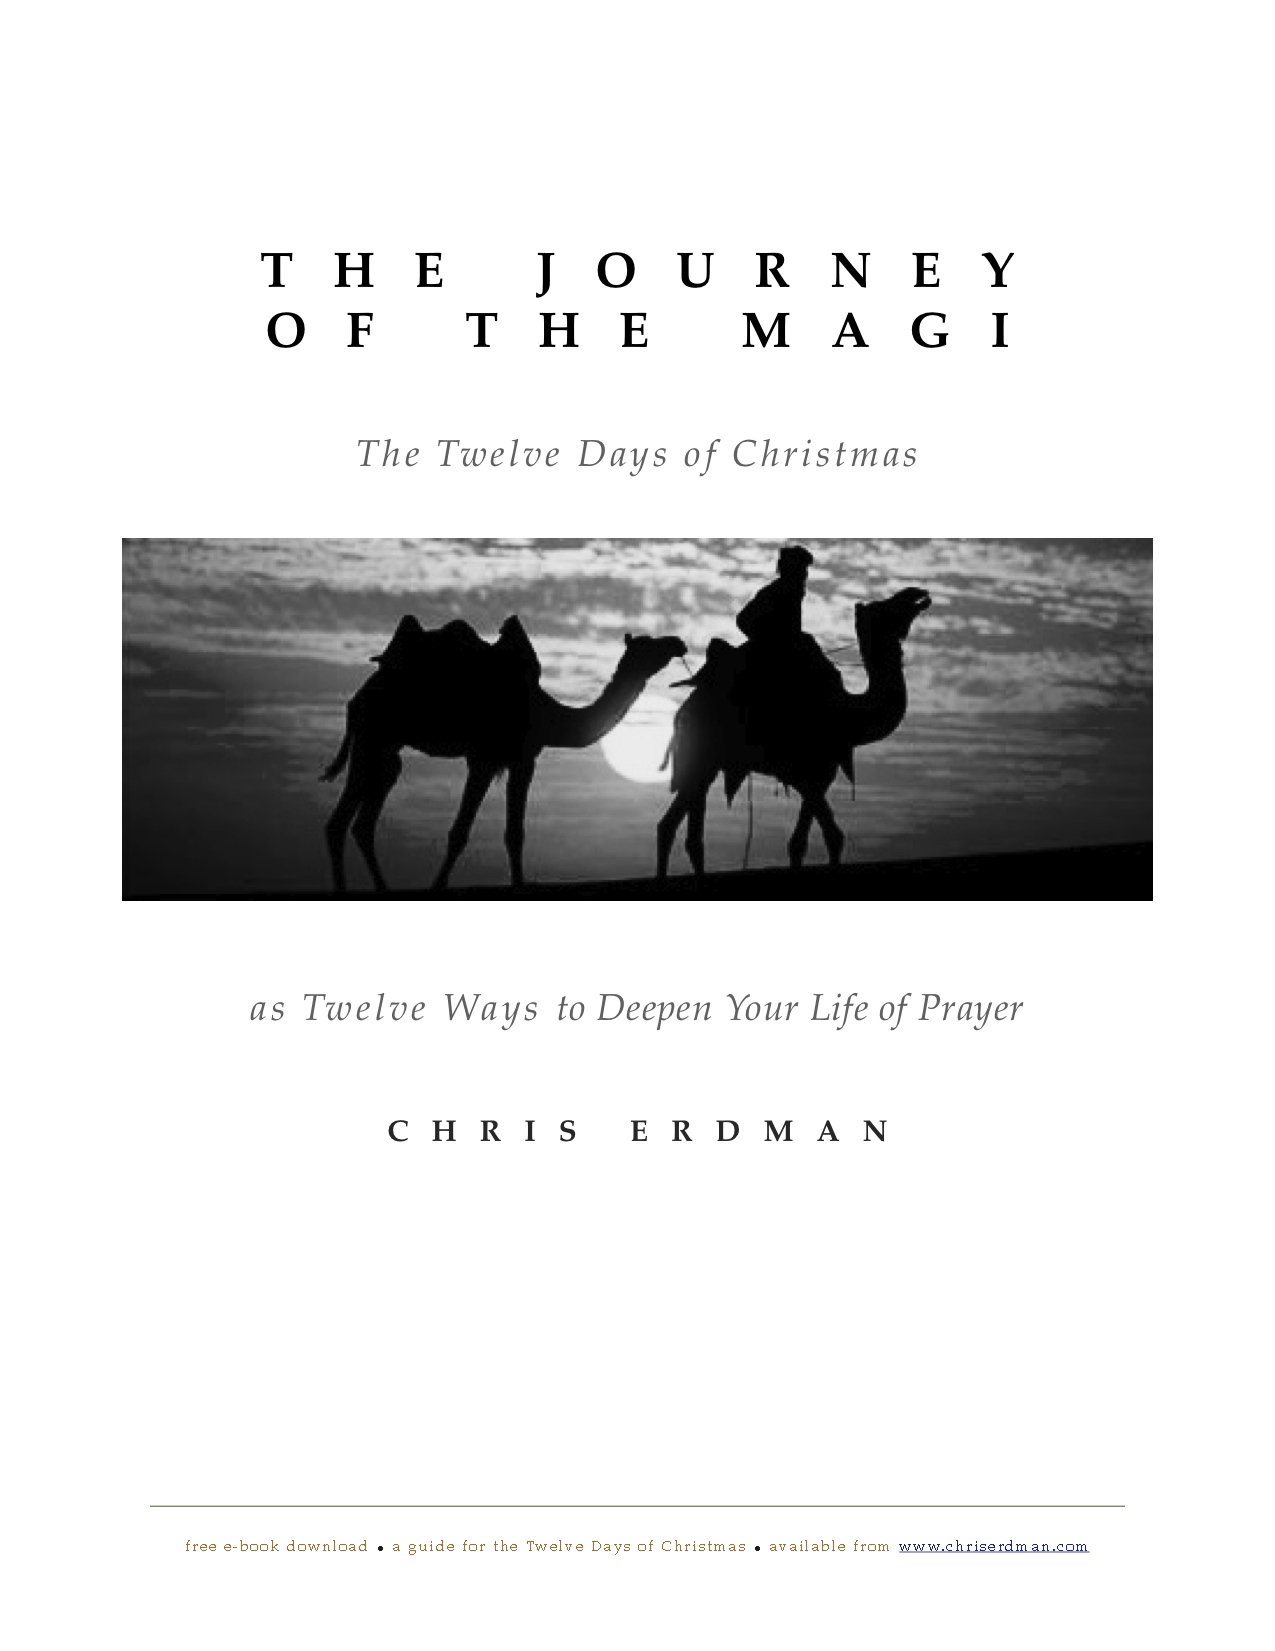 Journey of the Magi, e-book, cover